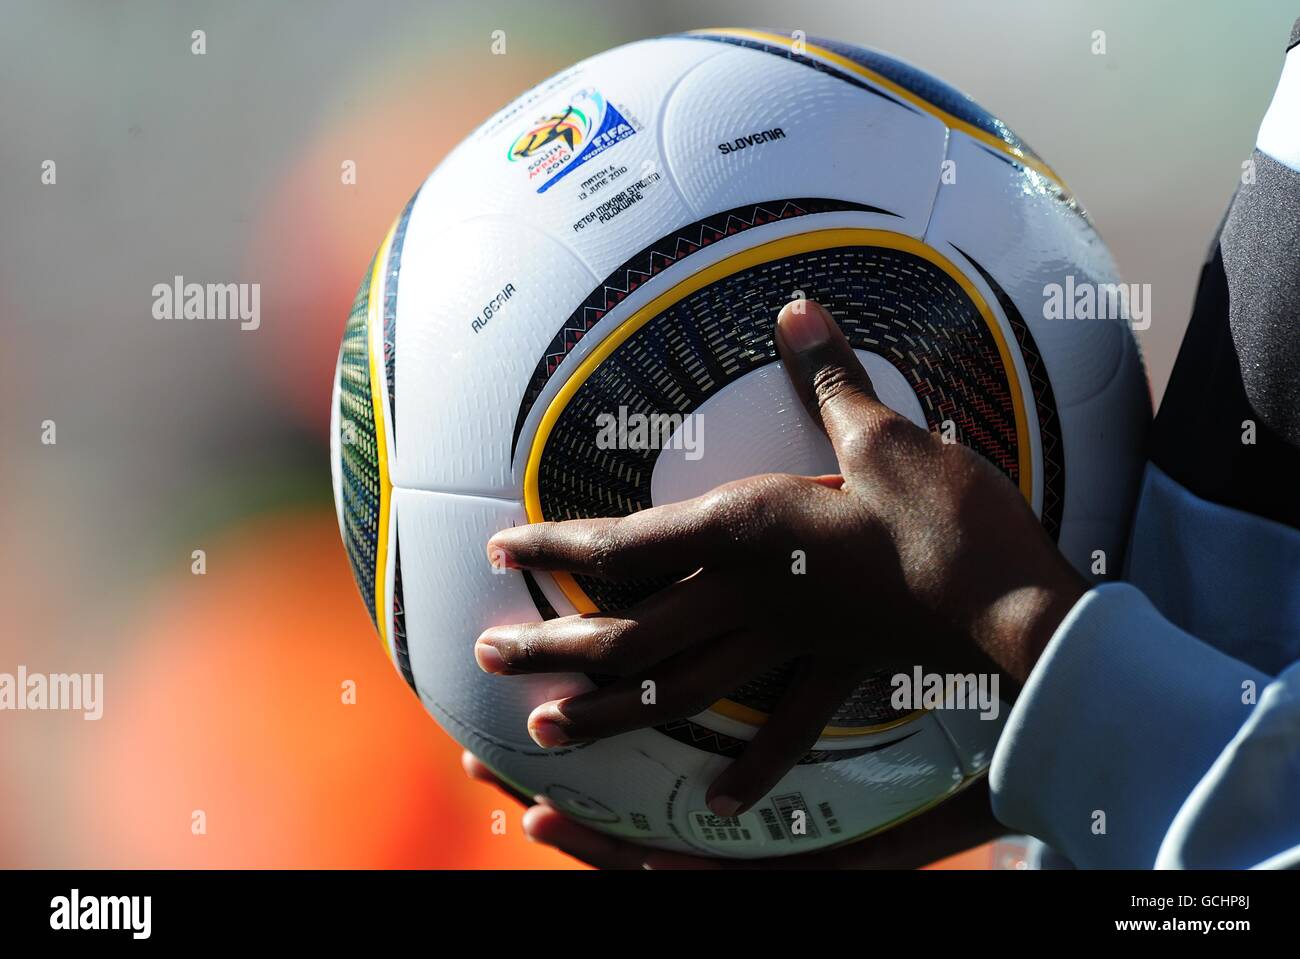 A ball boy holds a Adidas Jabulani match ball on the touchline Stock Photo